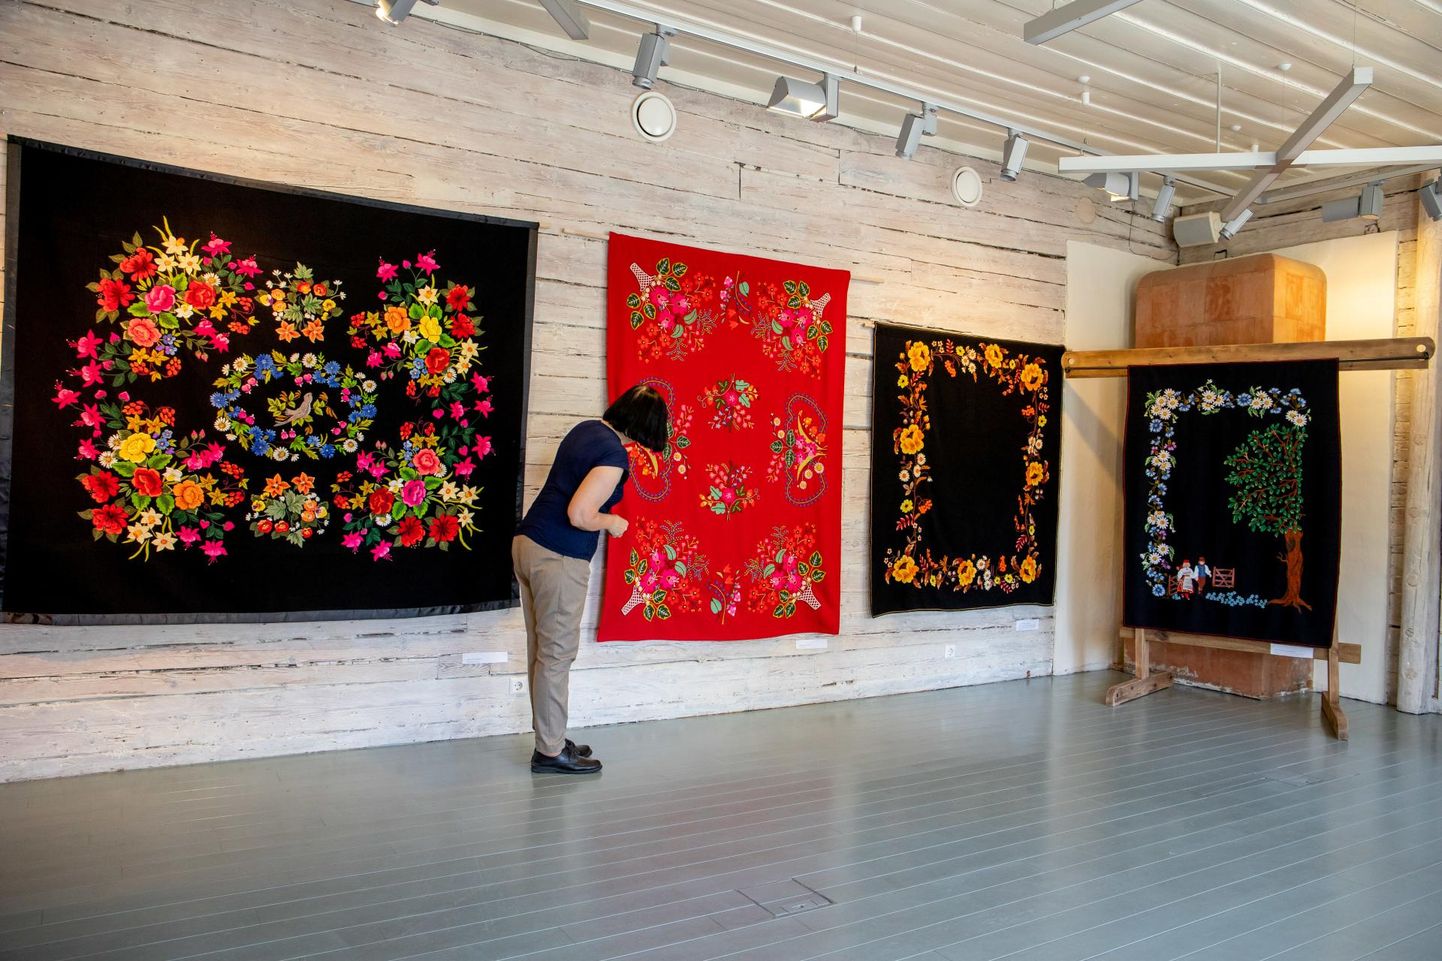 Näitus “Tekiklubi kevad” annab Kihnu muuseumis ülevaate meie traditsioonilise lilltikandi meistrite loomingust.